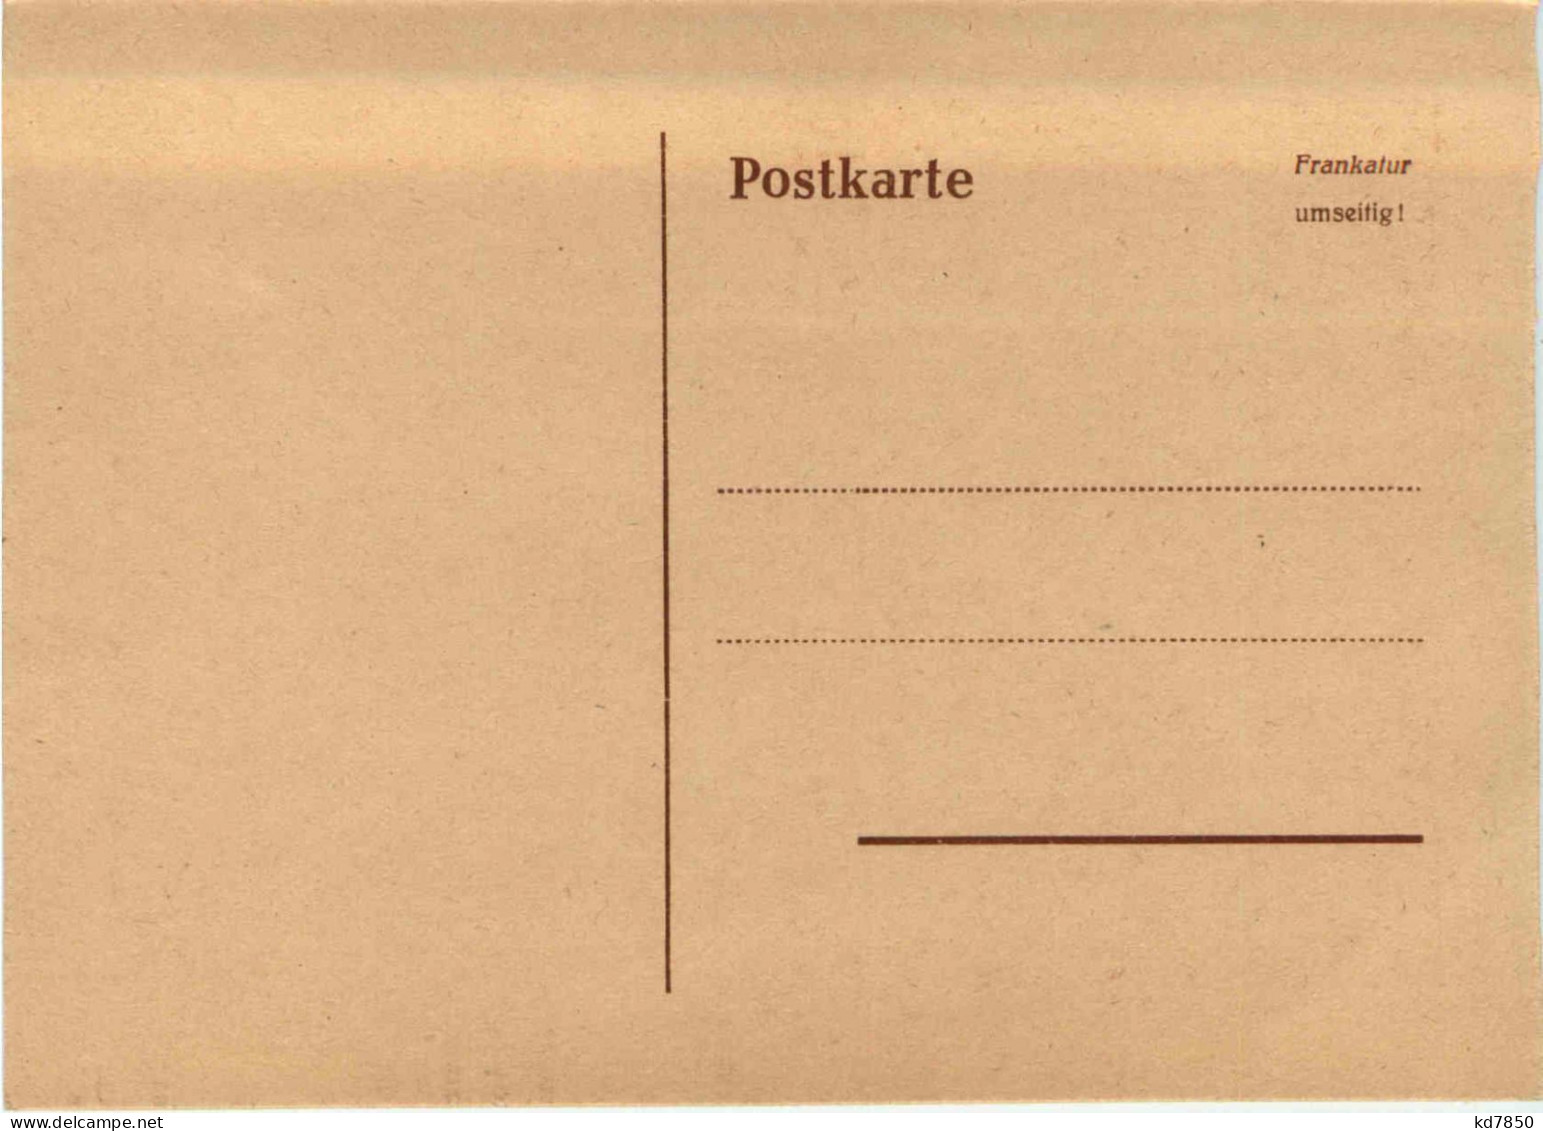 Tag Der Briefmarke 1951 - Saar - Sellos (representaciones)